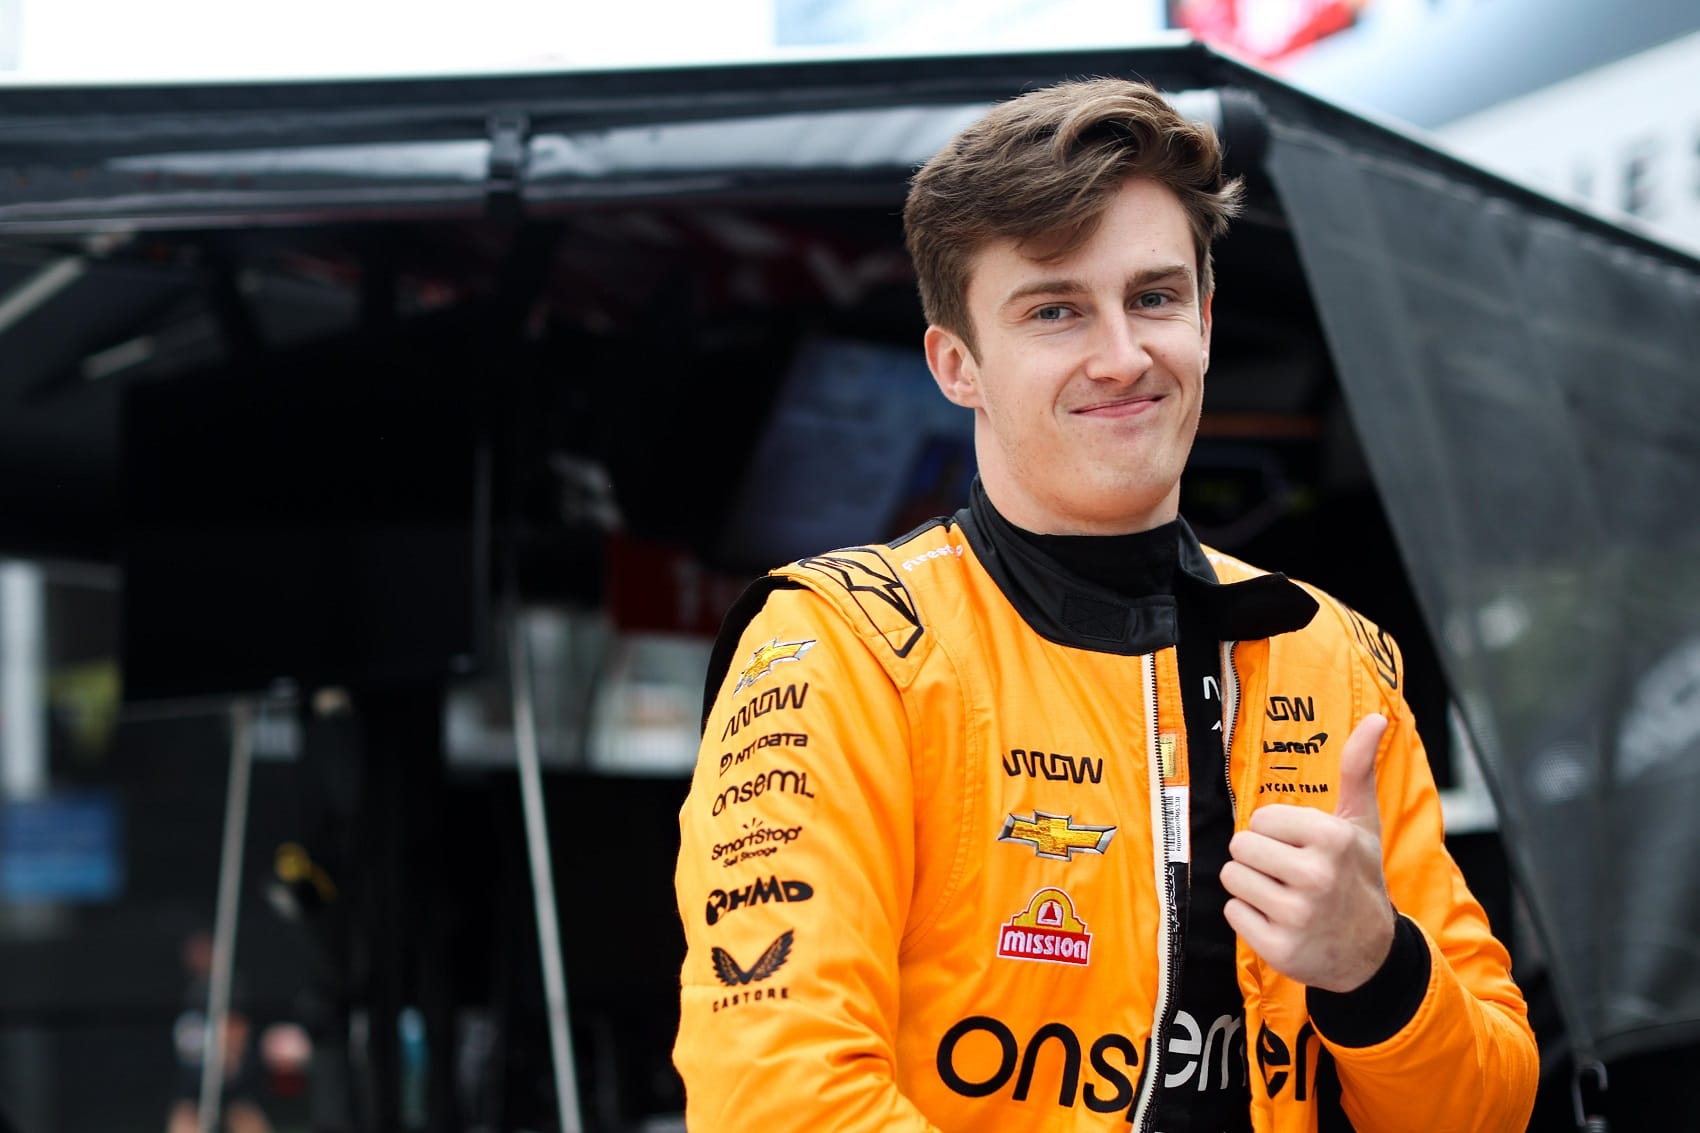 A McLaren meglepő lépése: kirúgja az új versenyzőt a régi pilóta visszahívásával